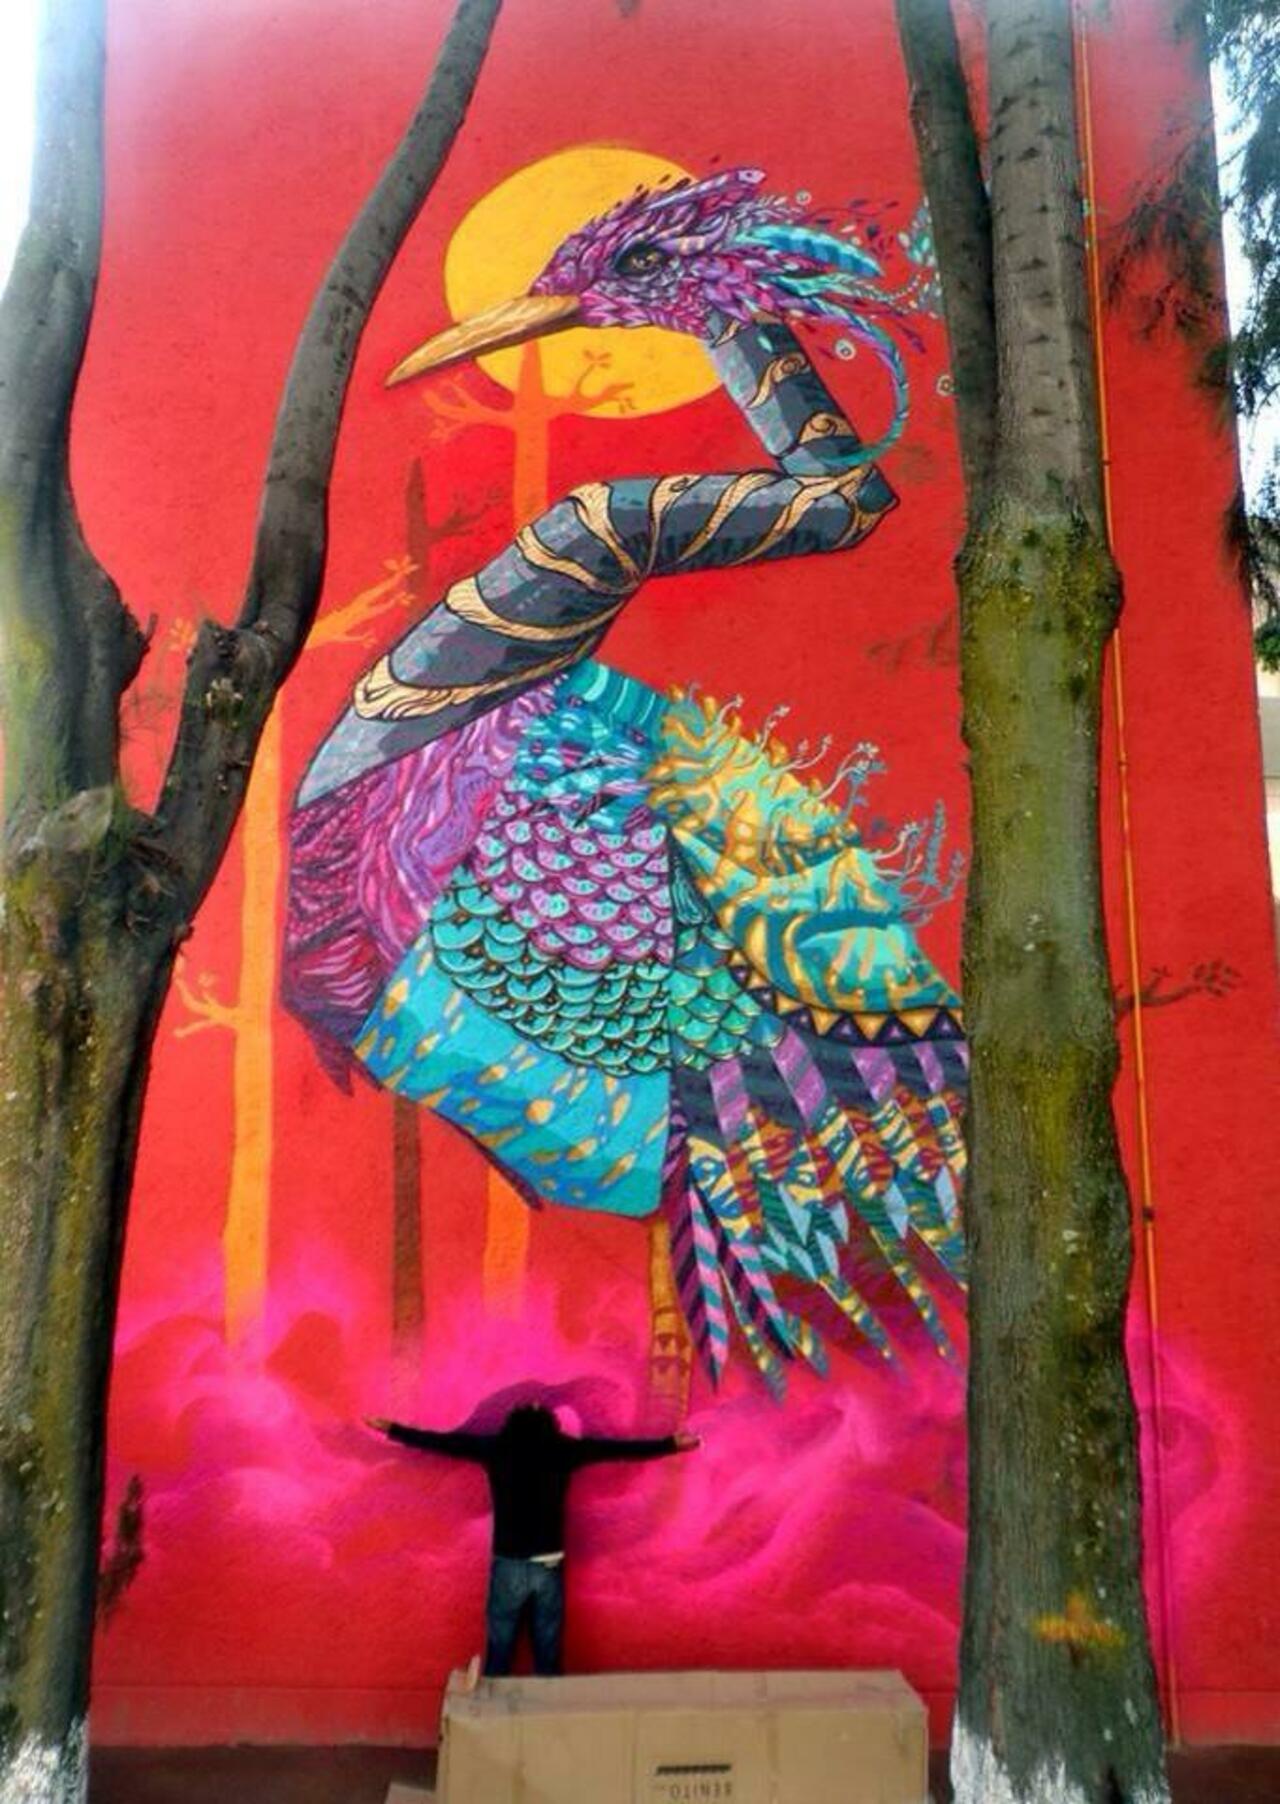 'Songs of Colour'

Sublime Nature in Street Art by NacHo Wm ft. Farid Rueda 

#art #arte #graffiti #streetart http://t.co/KGzEmVPer7